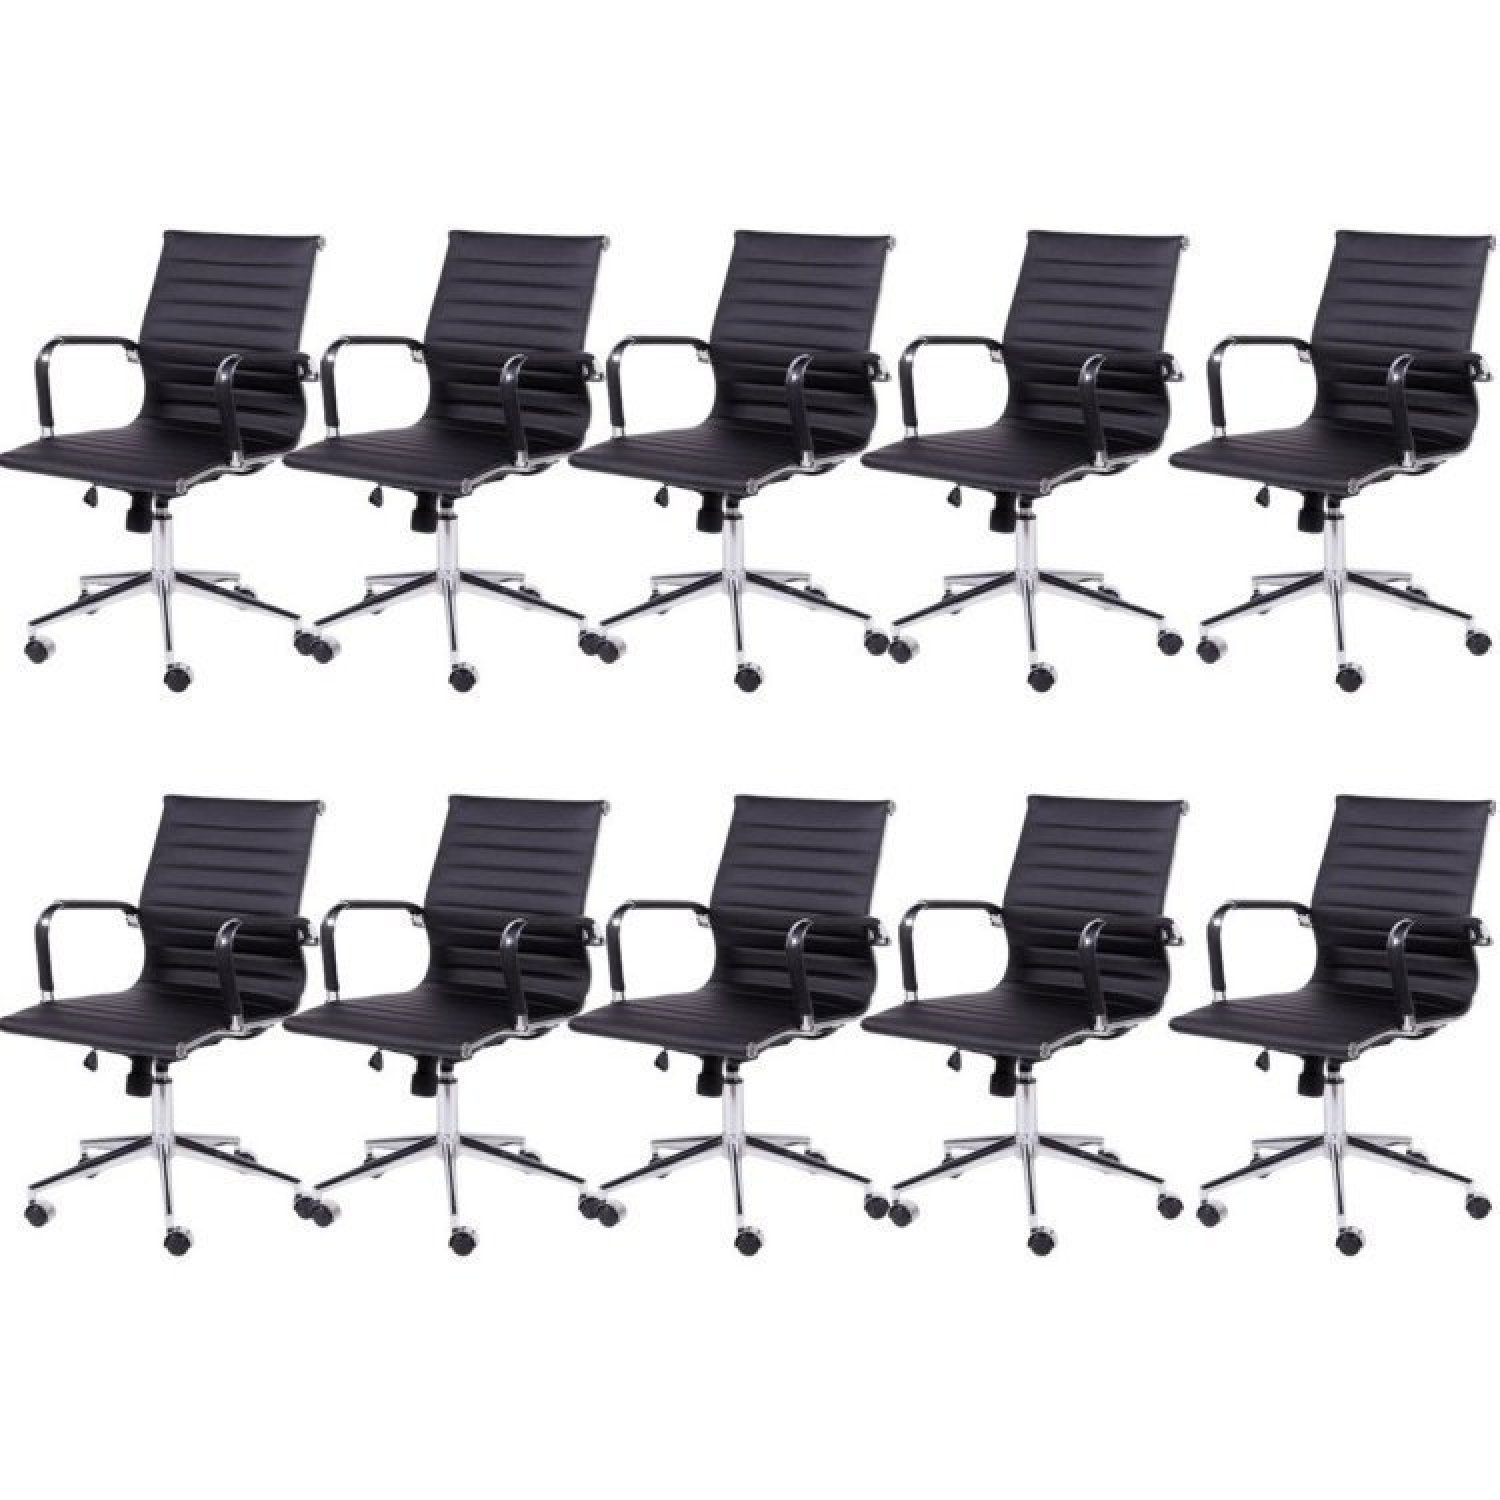 Kit 10 Cadeiras para Escritório Diretor Esteirinha com Relax Corino 3301 